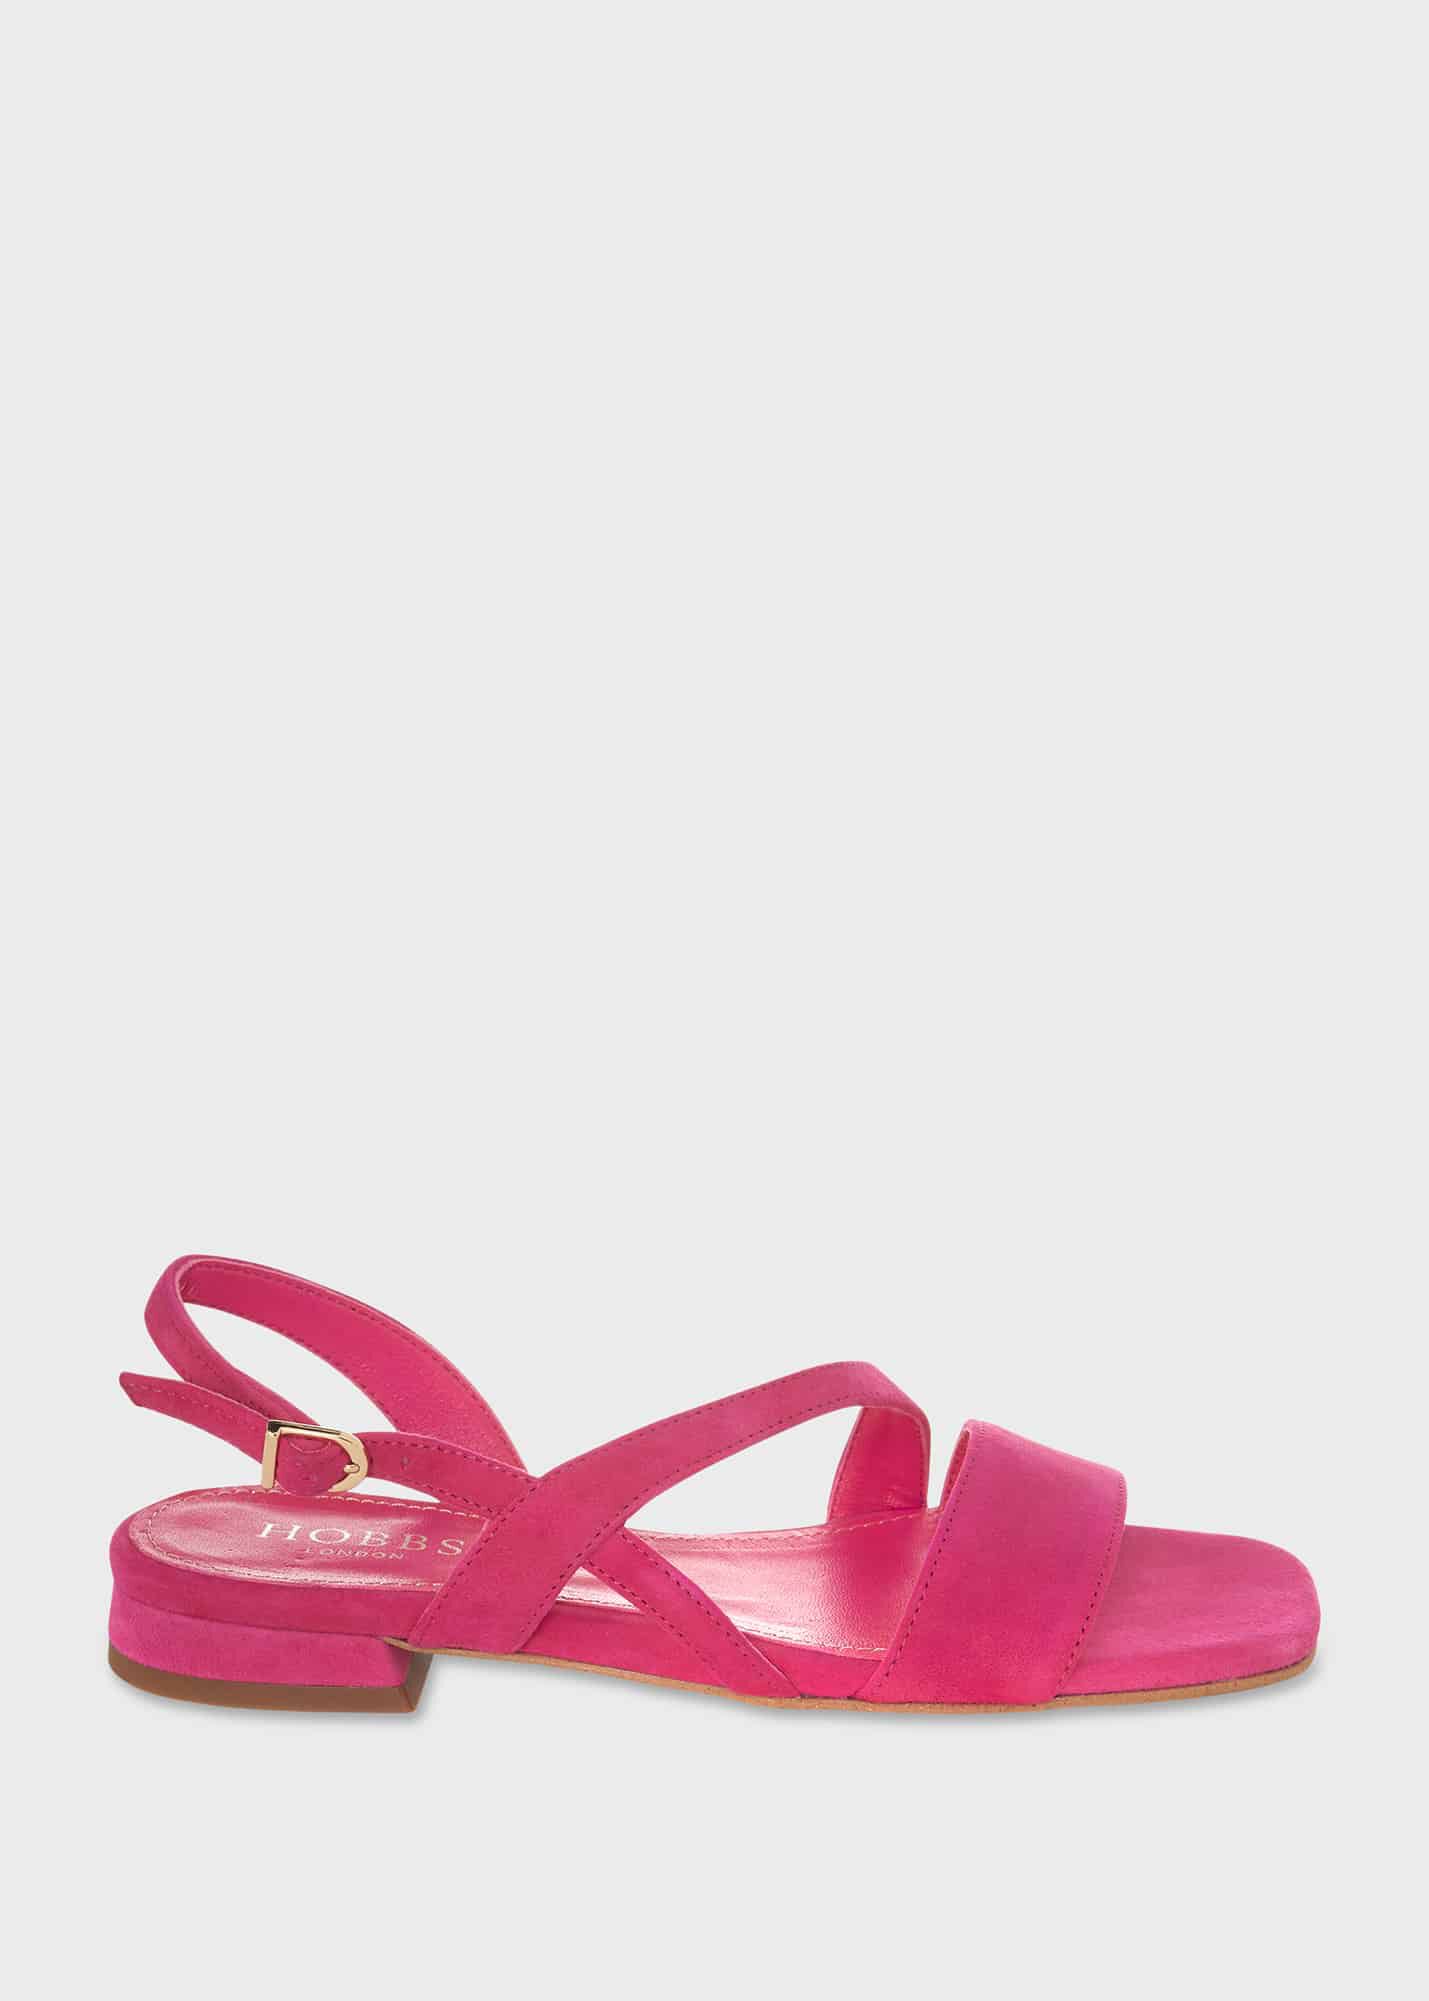 Hot Pink Beach Sandals Summer Cute Flat Sandals US Size 3-15|FSJshoes